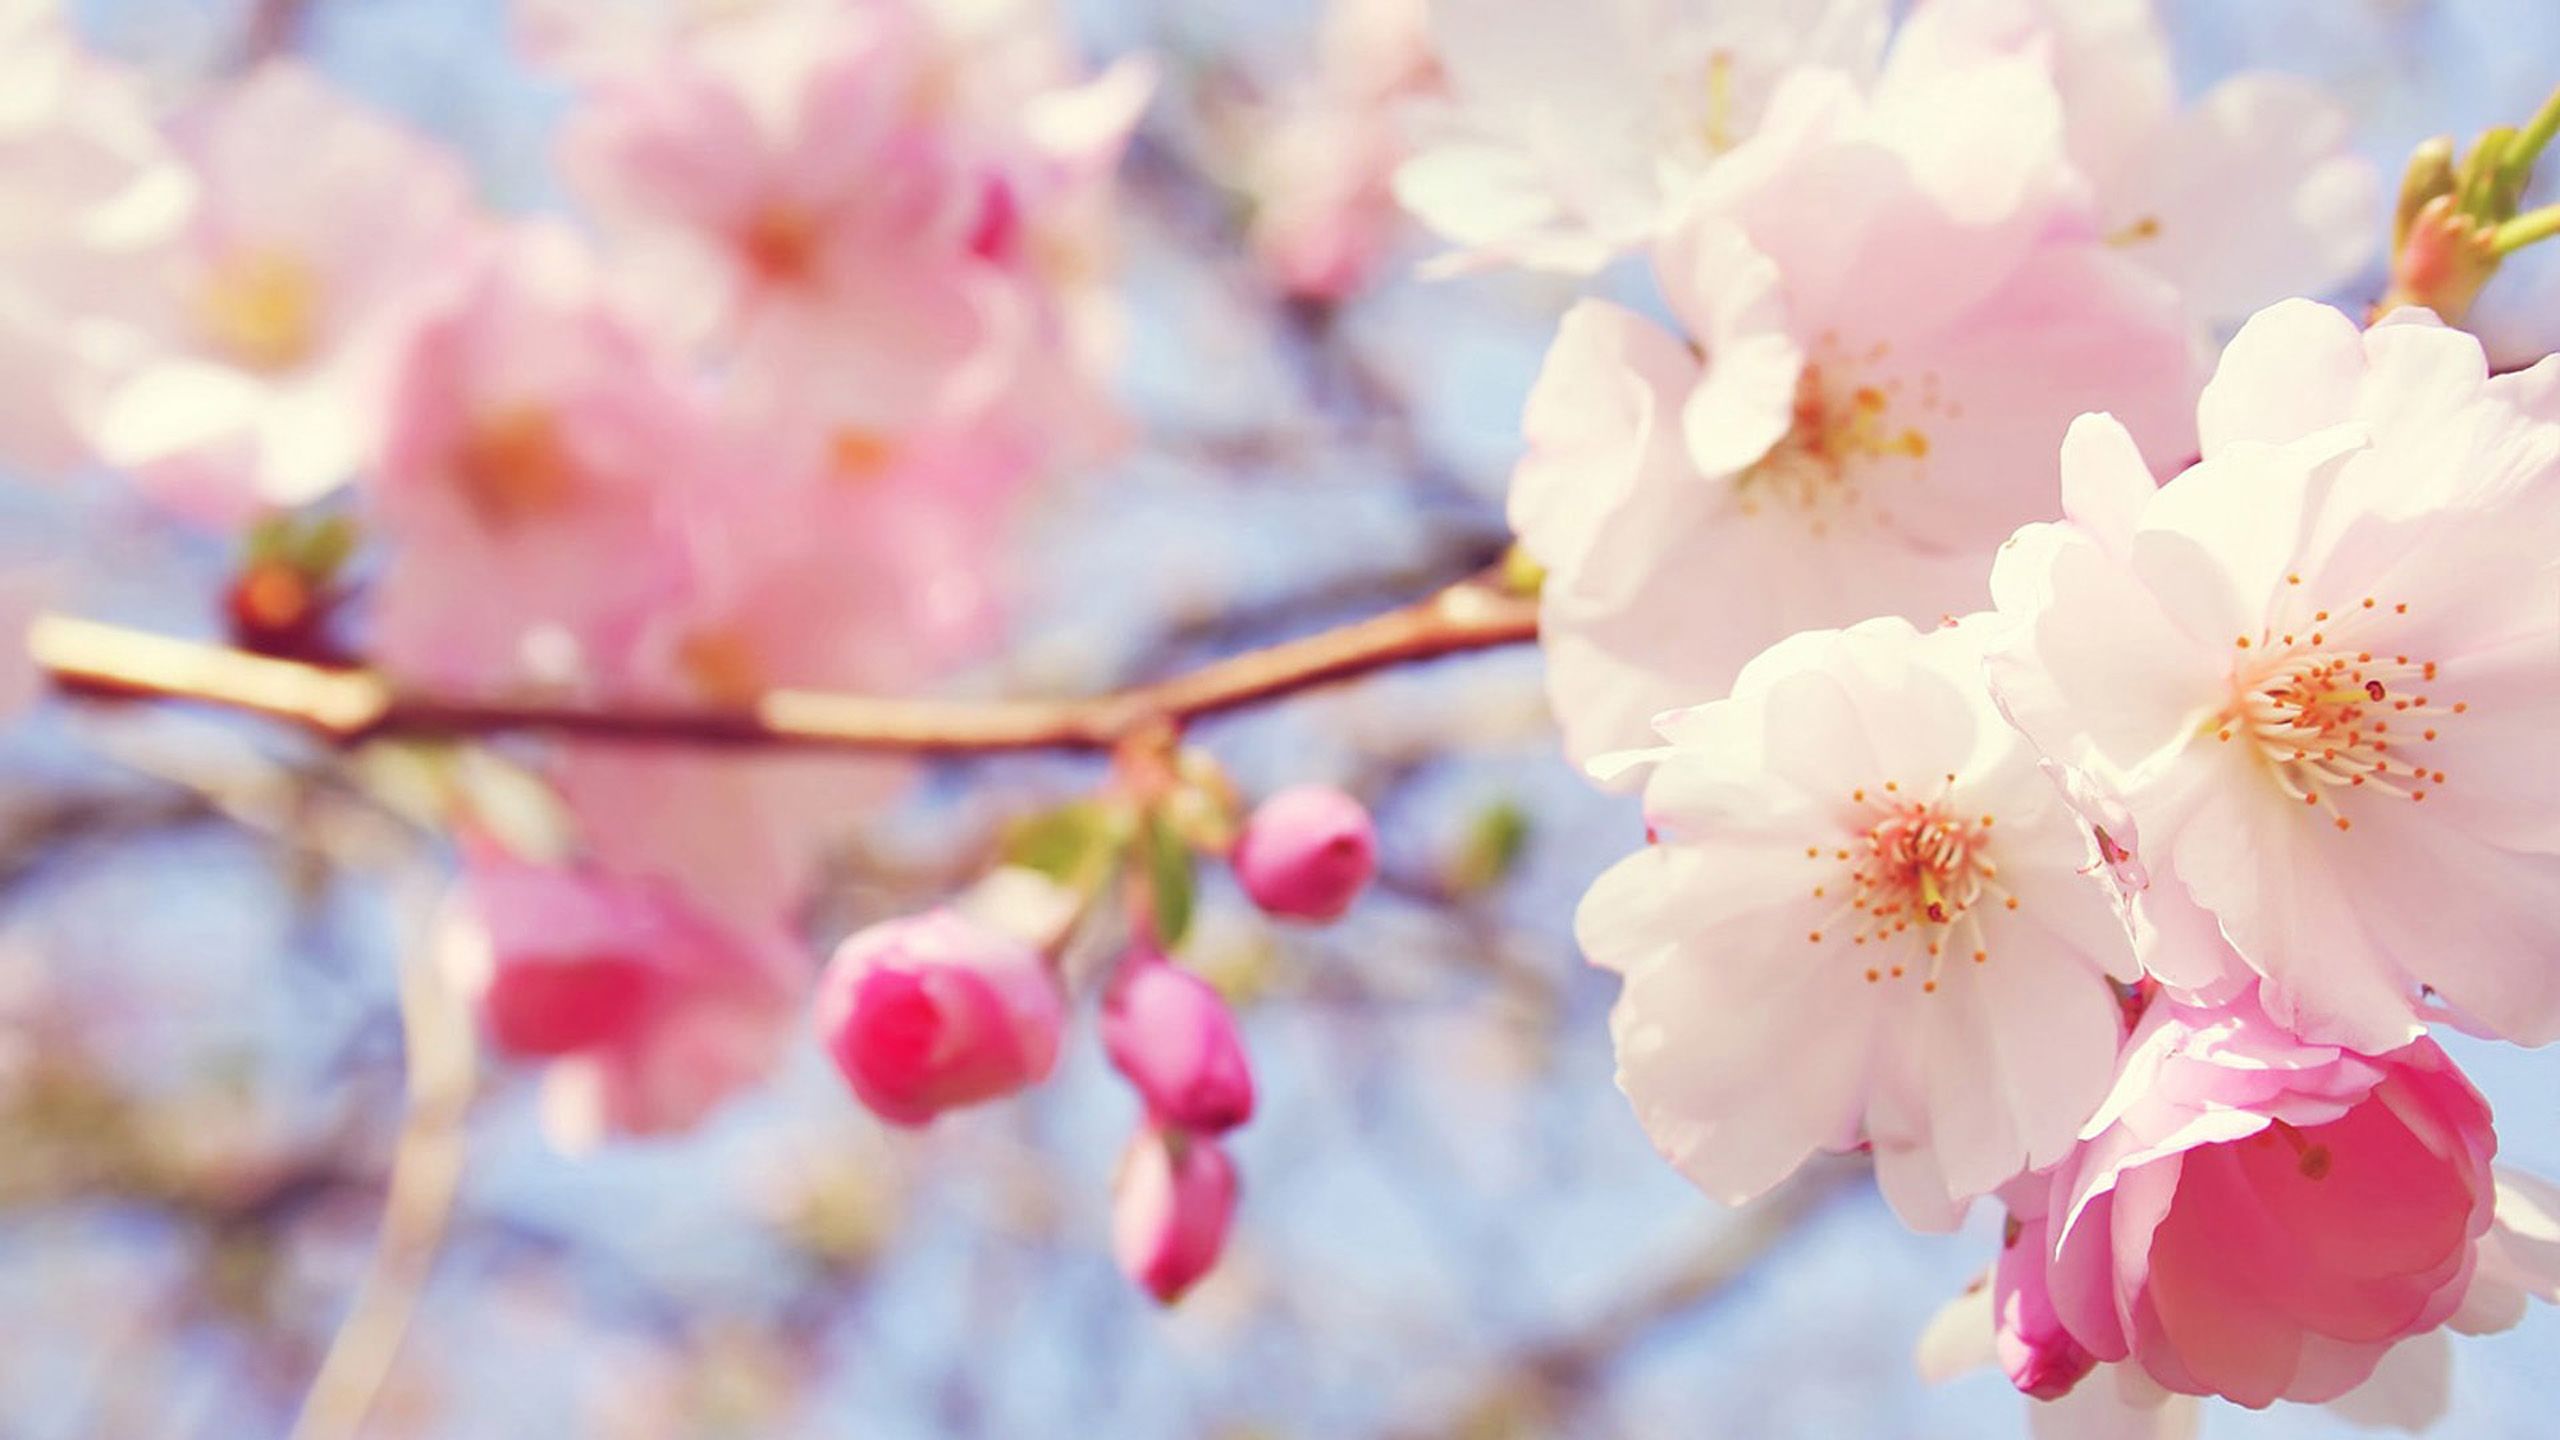 بکگراند شگفت آور و جالب از شکوفه های درخت هلو با کیفیت بالا 